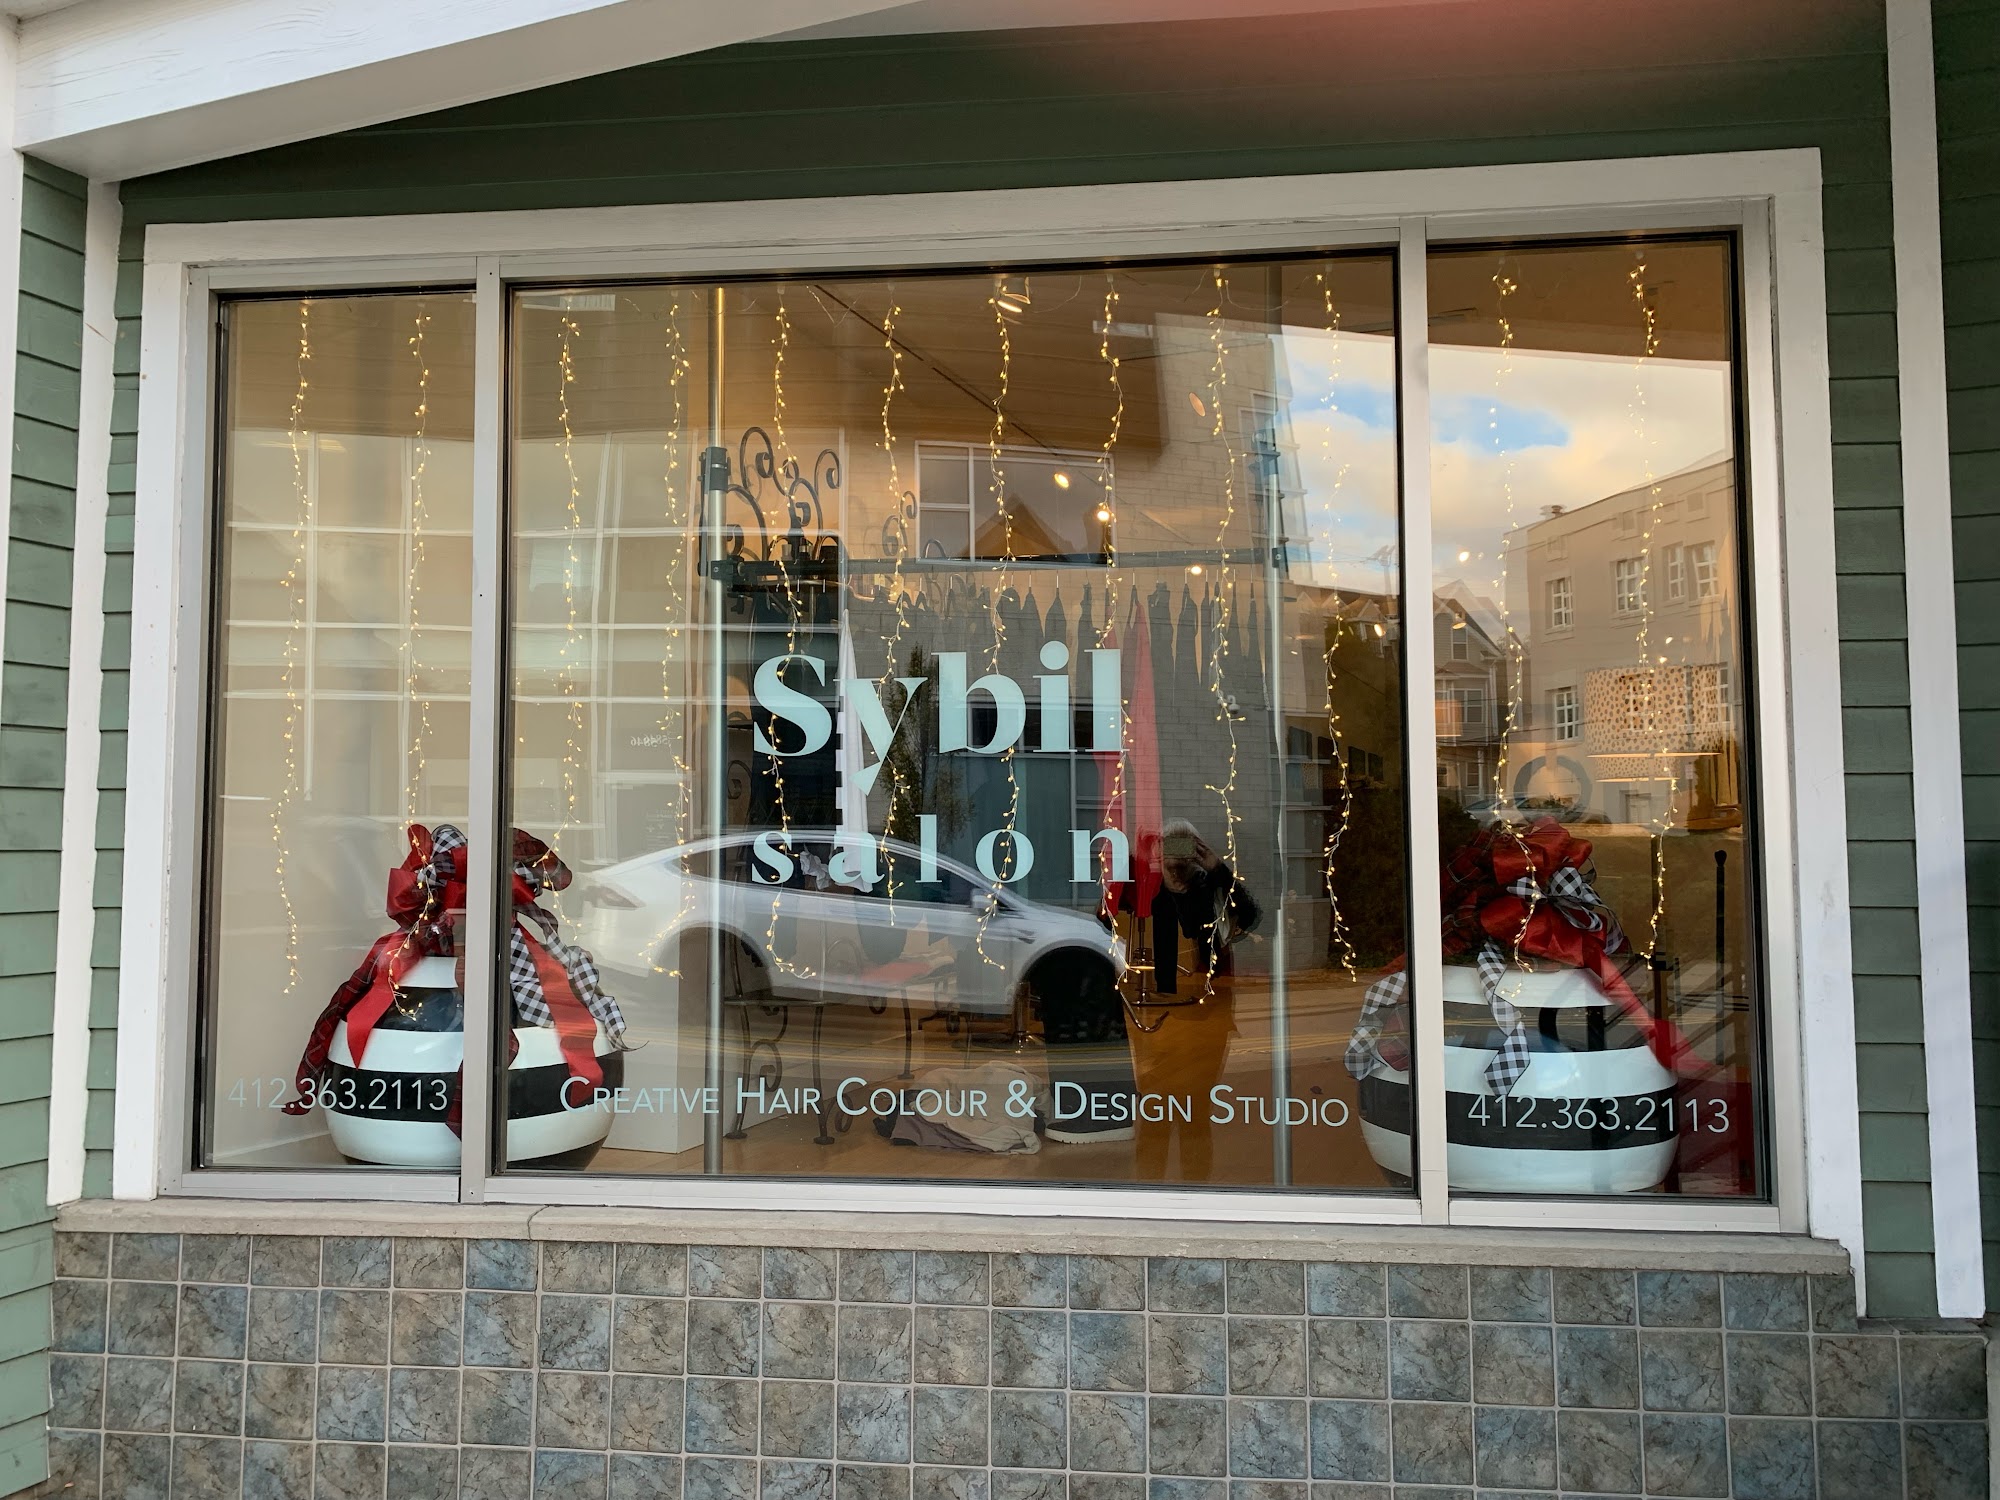 Sybil Salon & Boutique